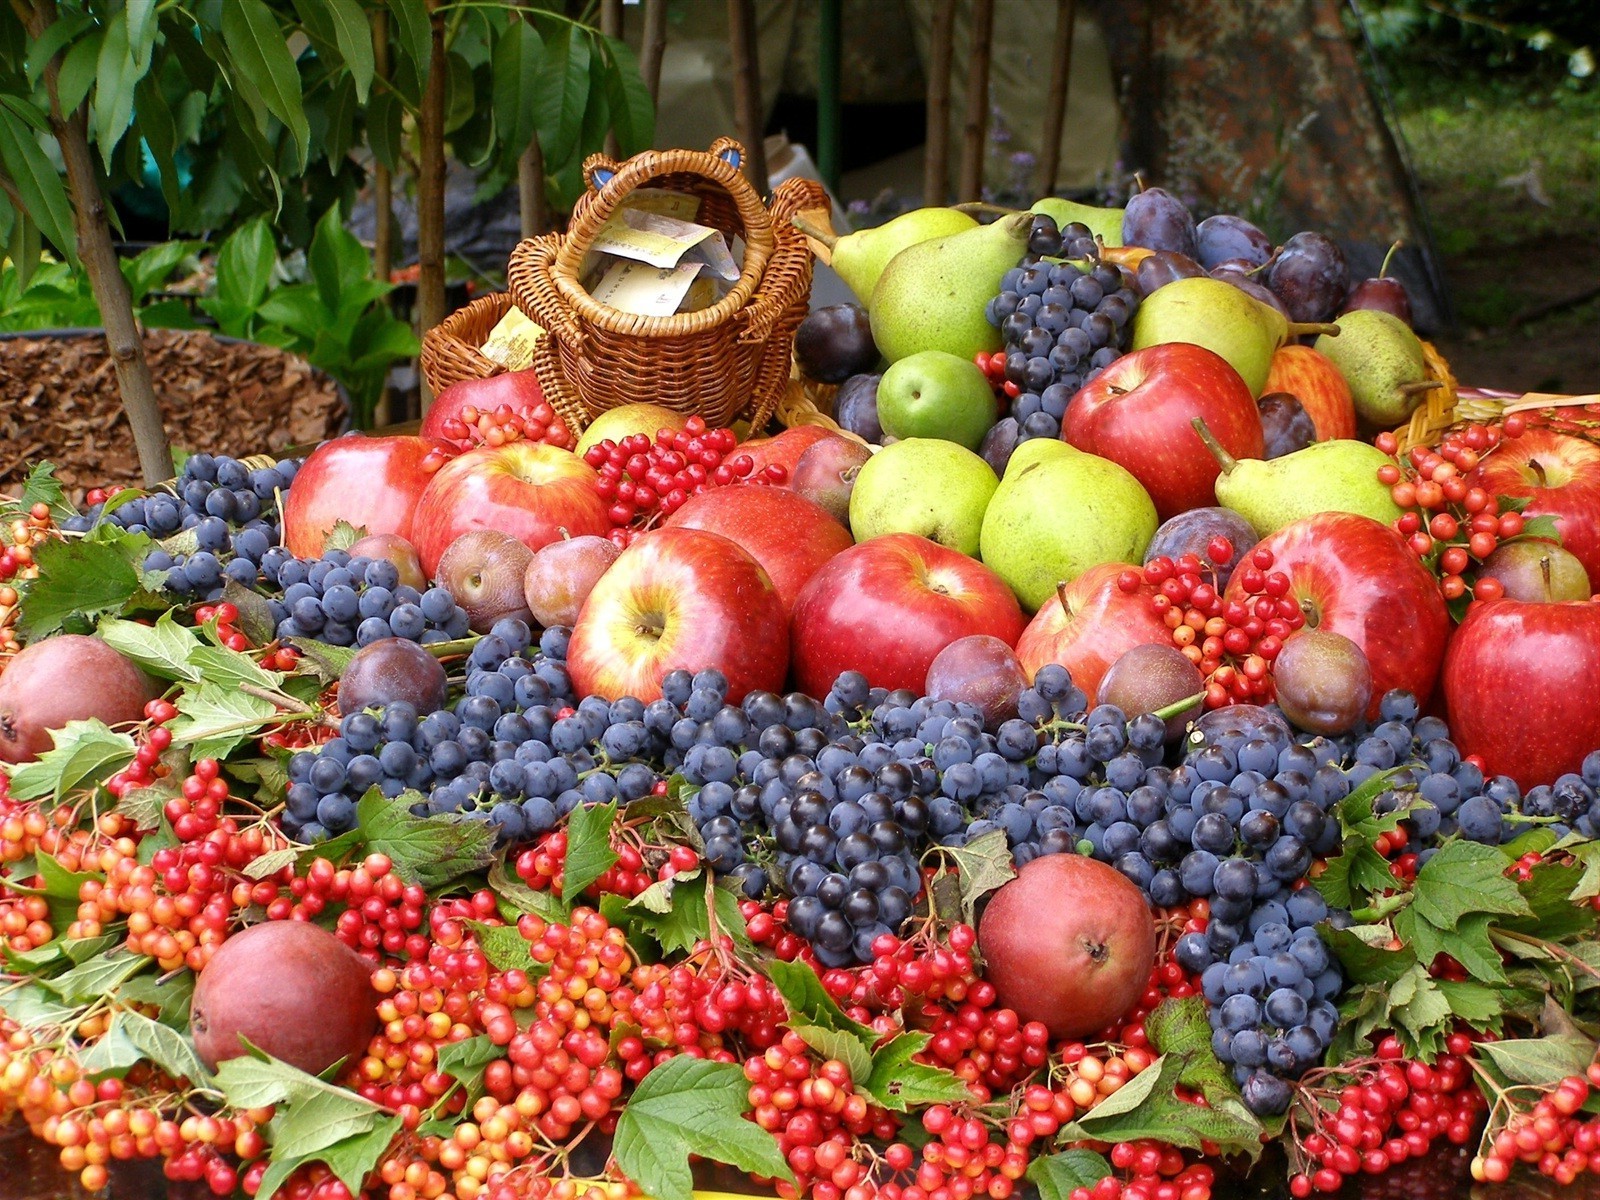 фрукты расти еда рынок сельское хозяйство пастбище сочные изобилие ягодка яблоко здоровый кондитерское изделие осень лист сад корзина природа